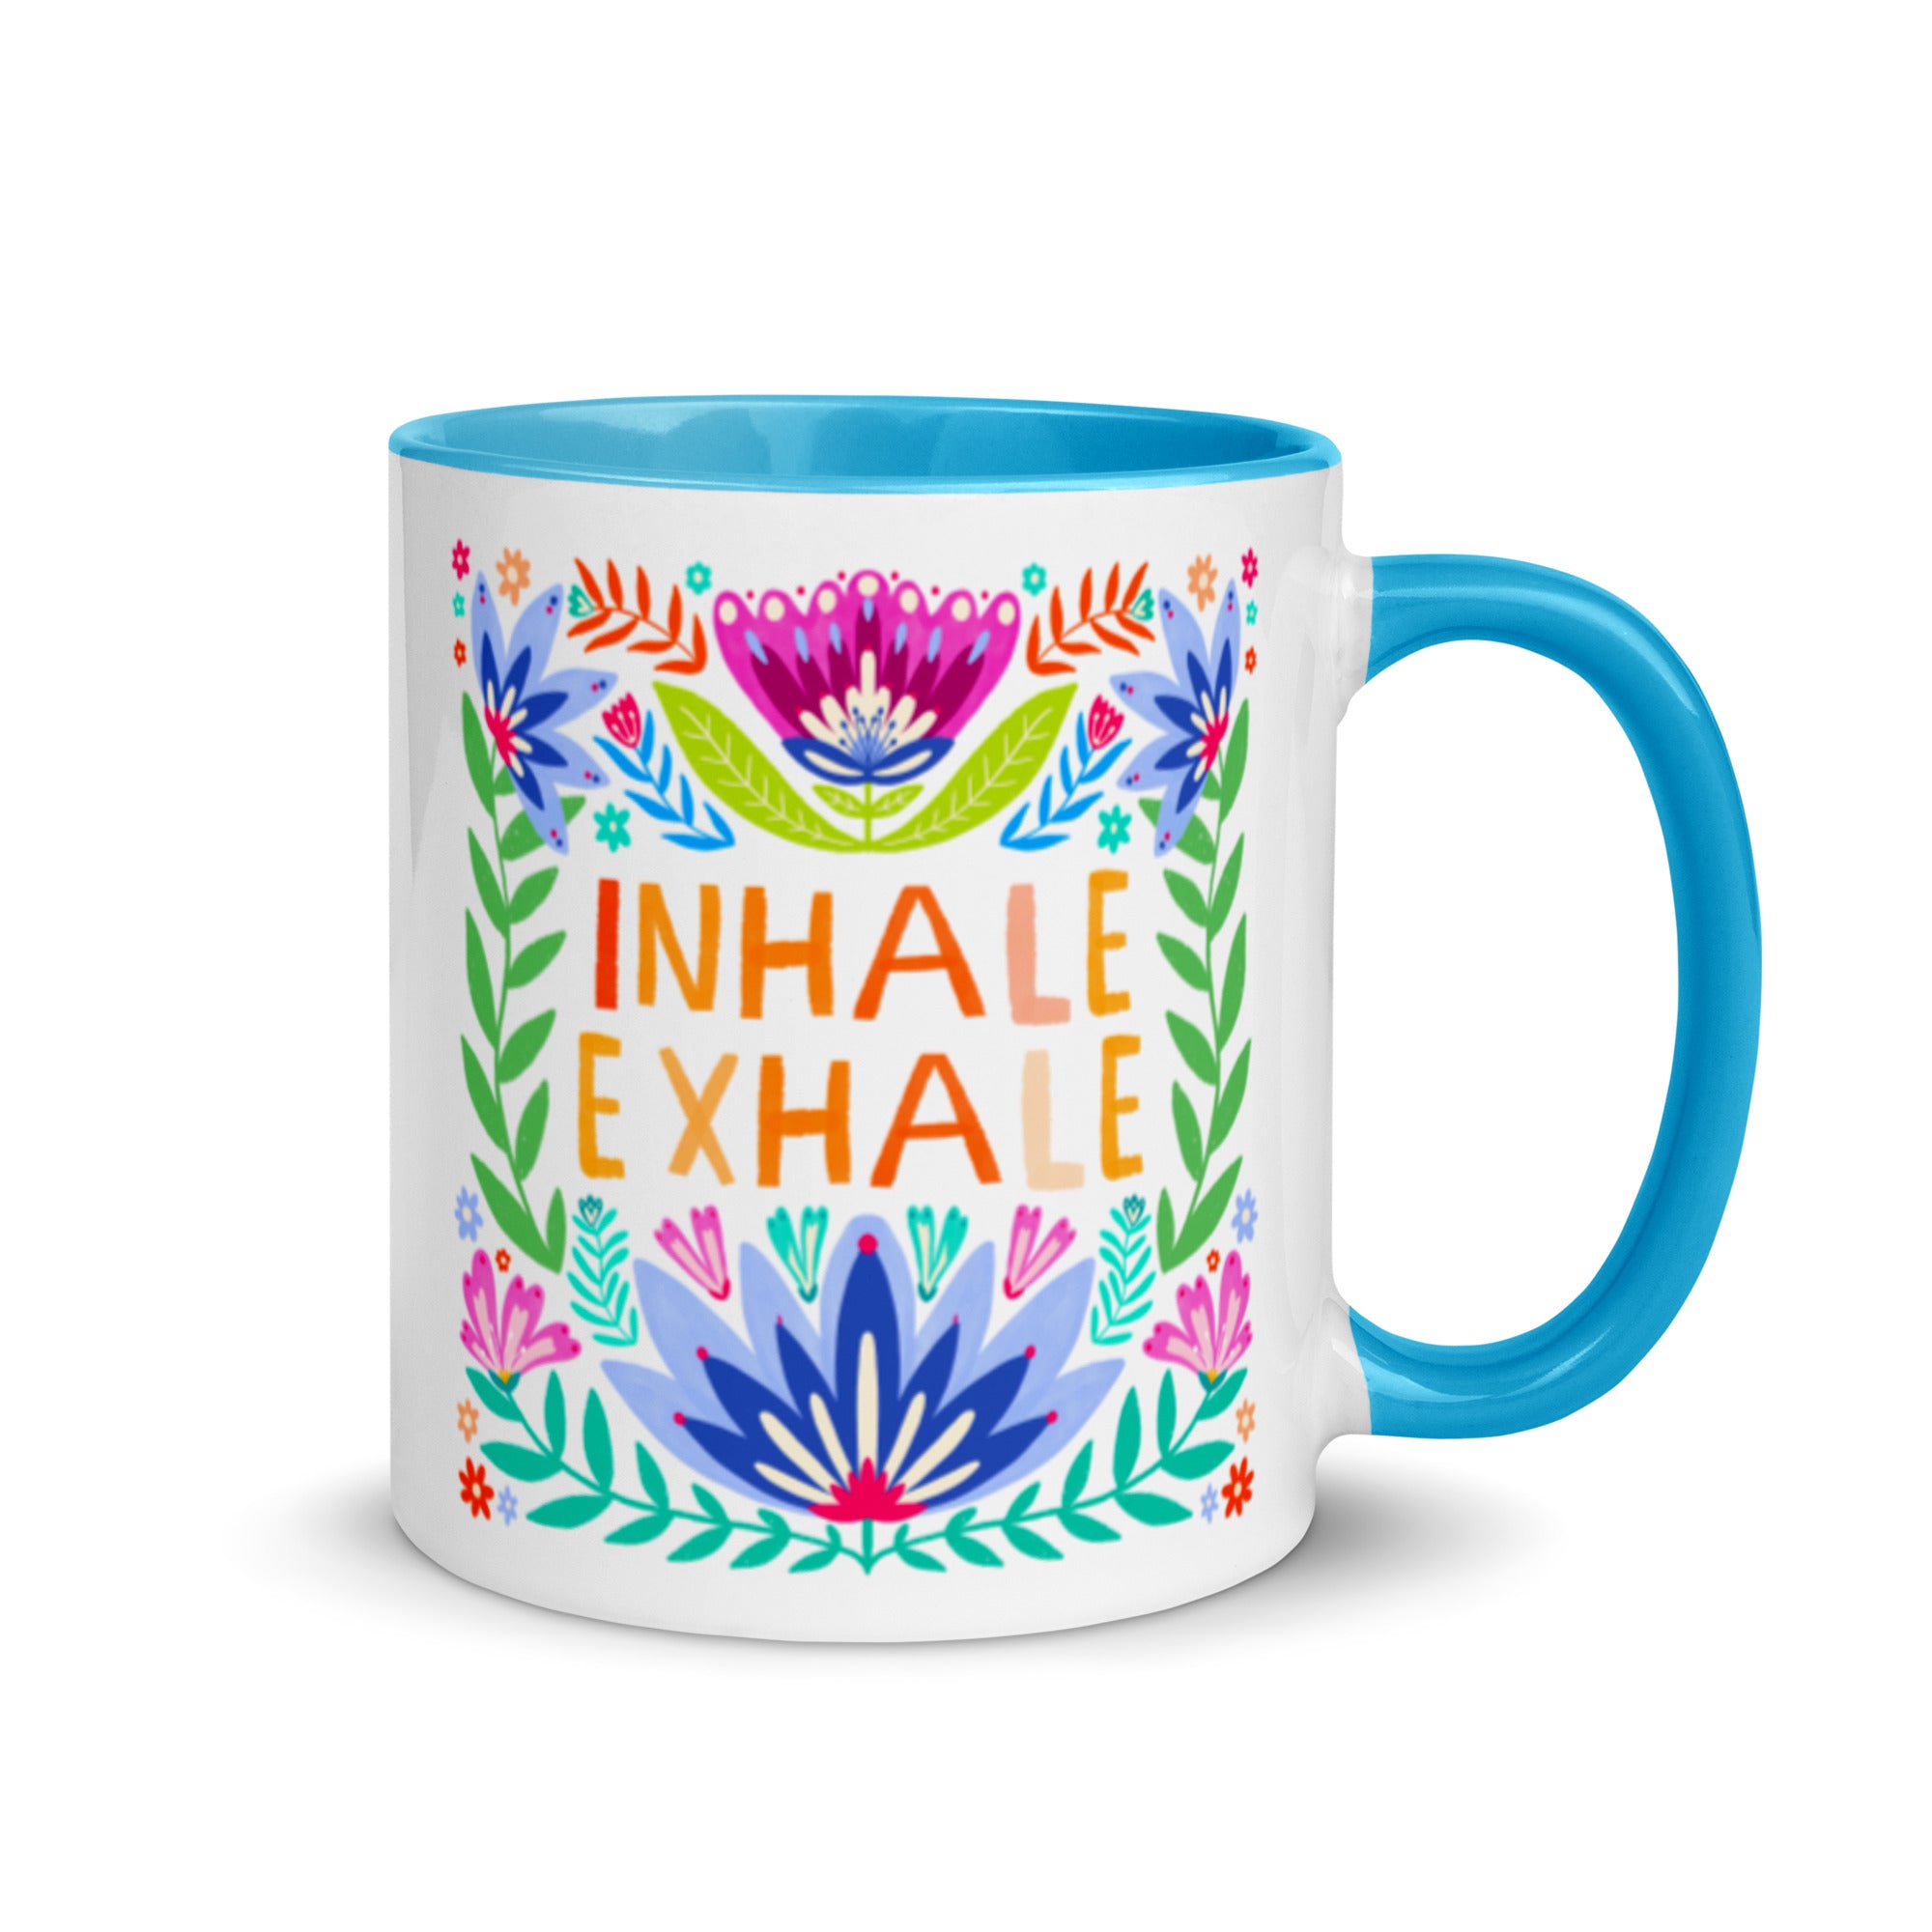 Inhale Exhale Ceramic Mug